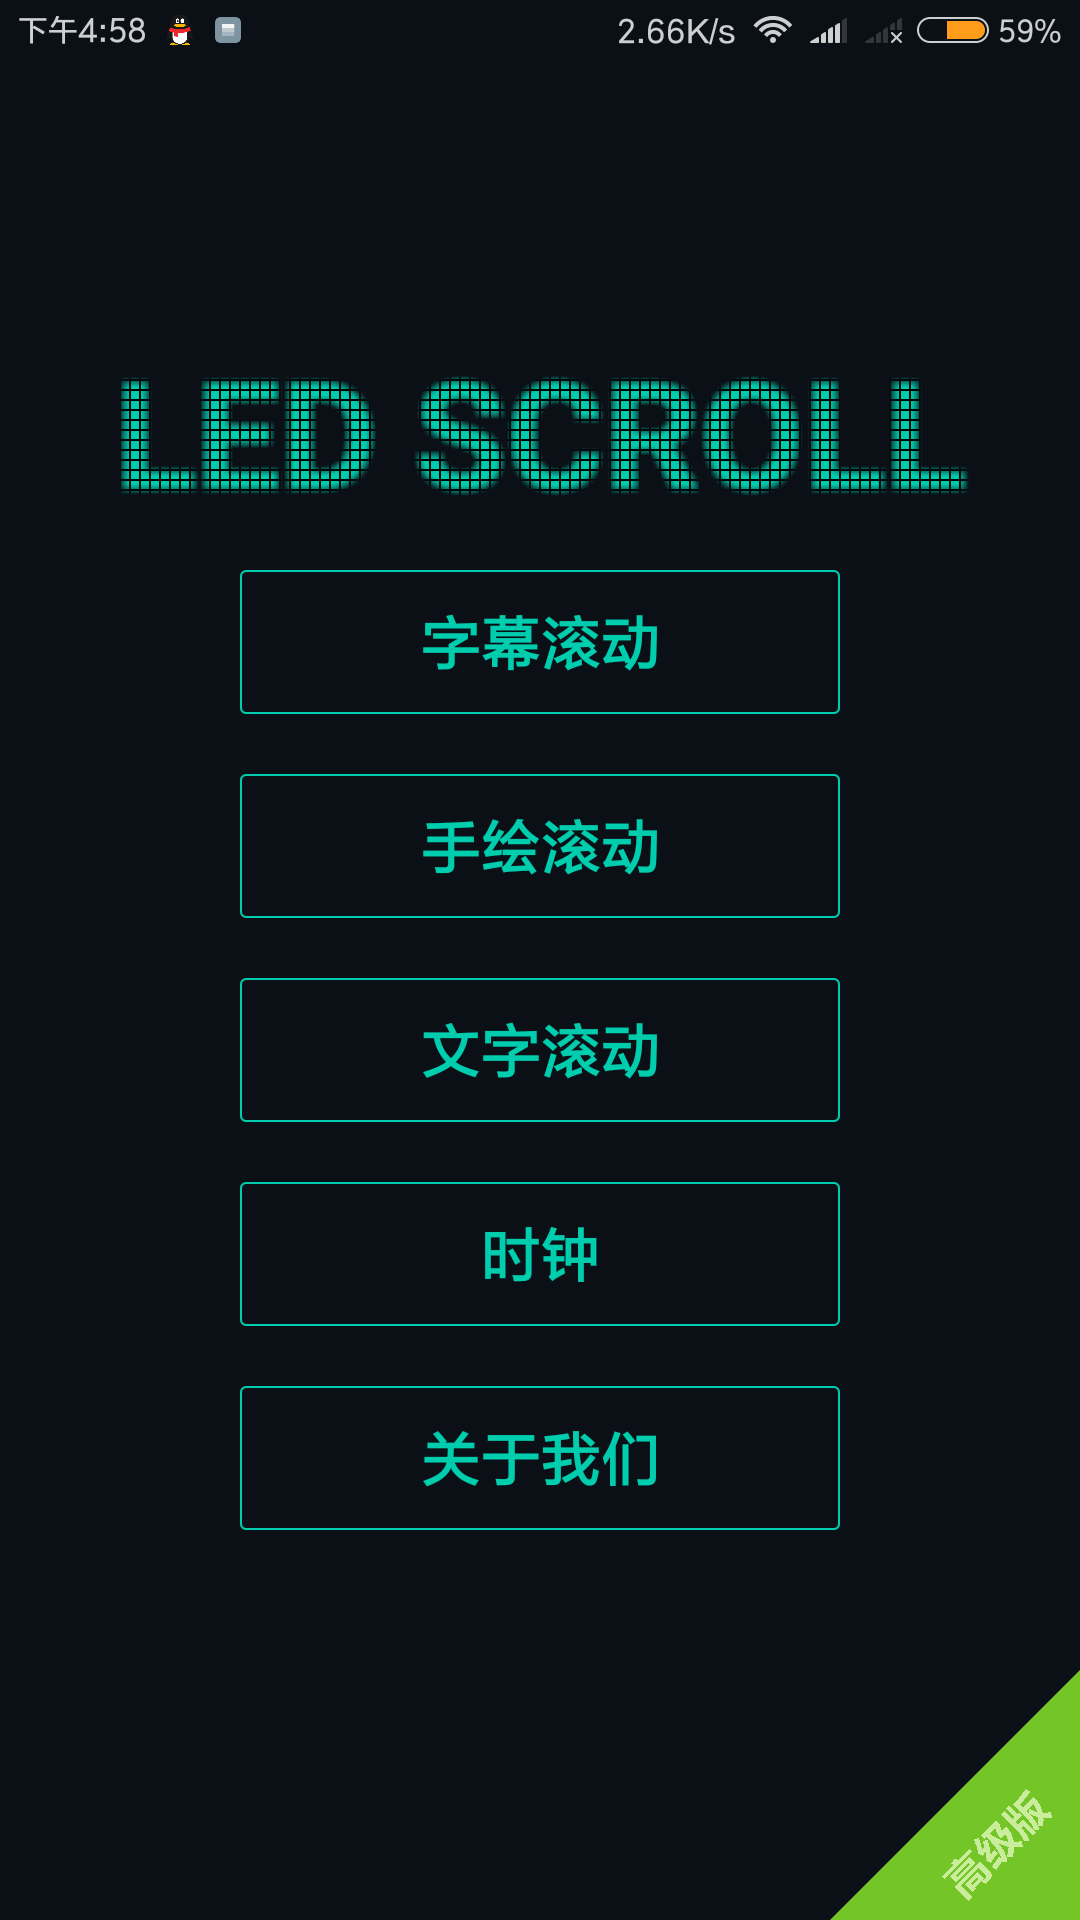 【安卓】多功能LED字幕高级解锁版V4.4.6